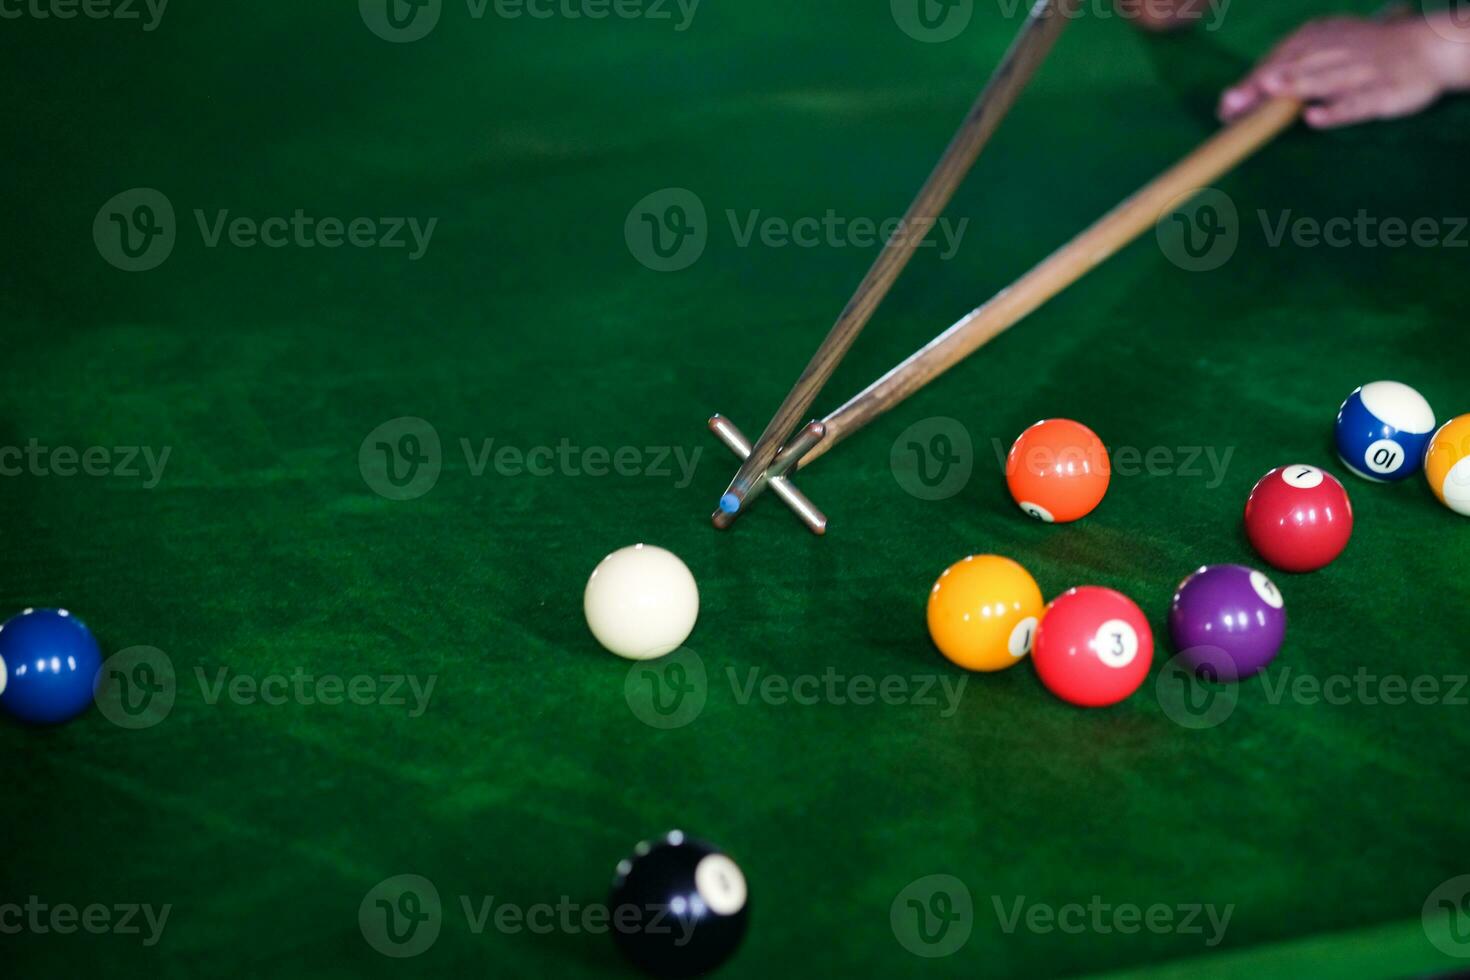 mannens hand och kö ärm spelar snooker spel eller framställning siktar till skjuta slå samman bollar på en grön biljard tabell. färgrik snooker bollar på grön fris. foto